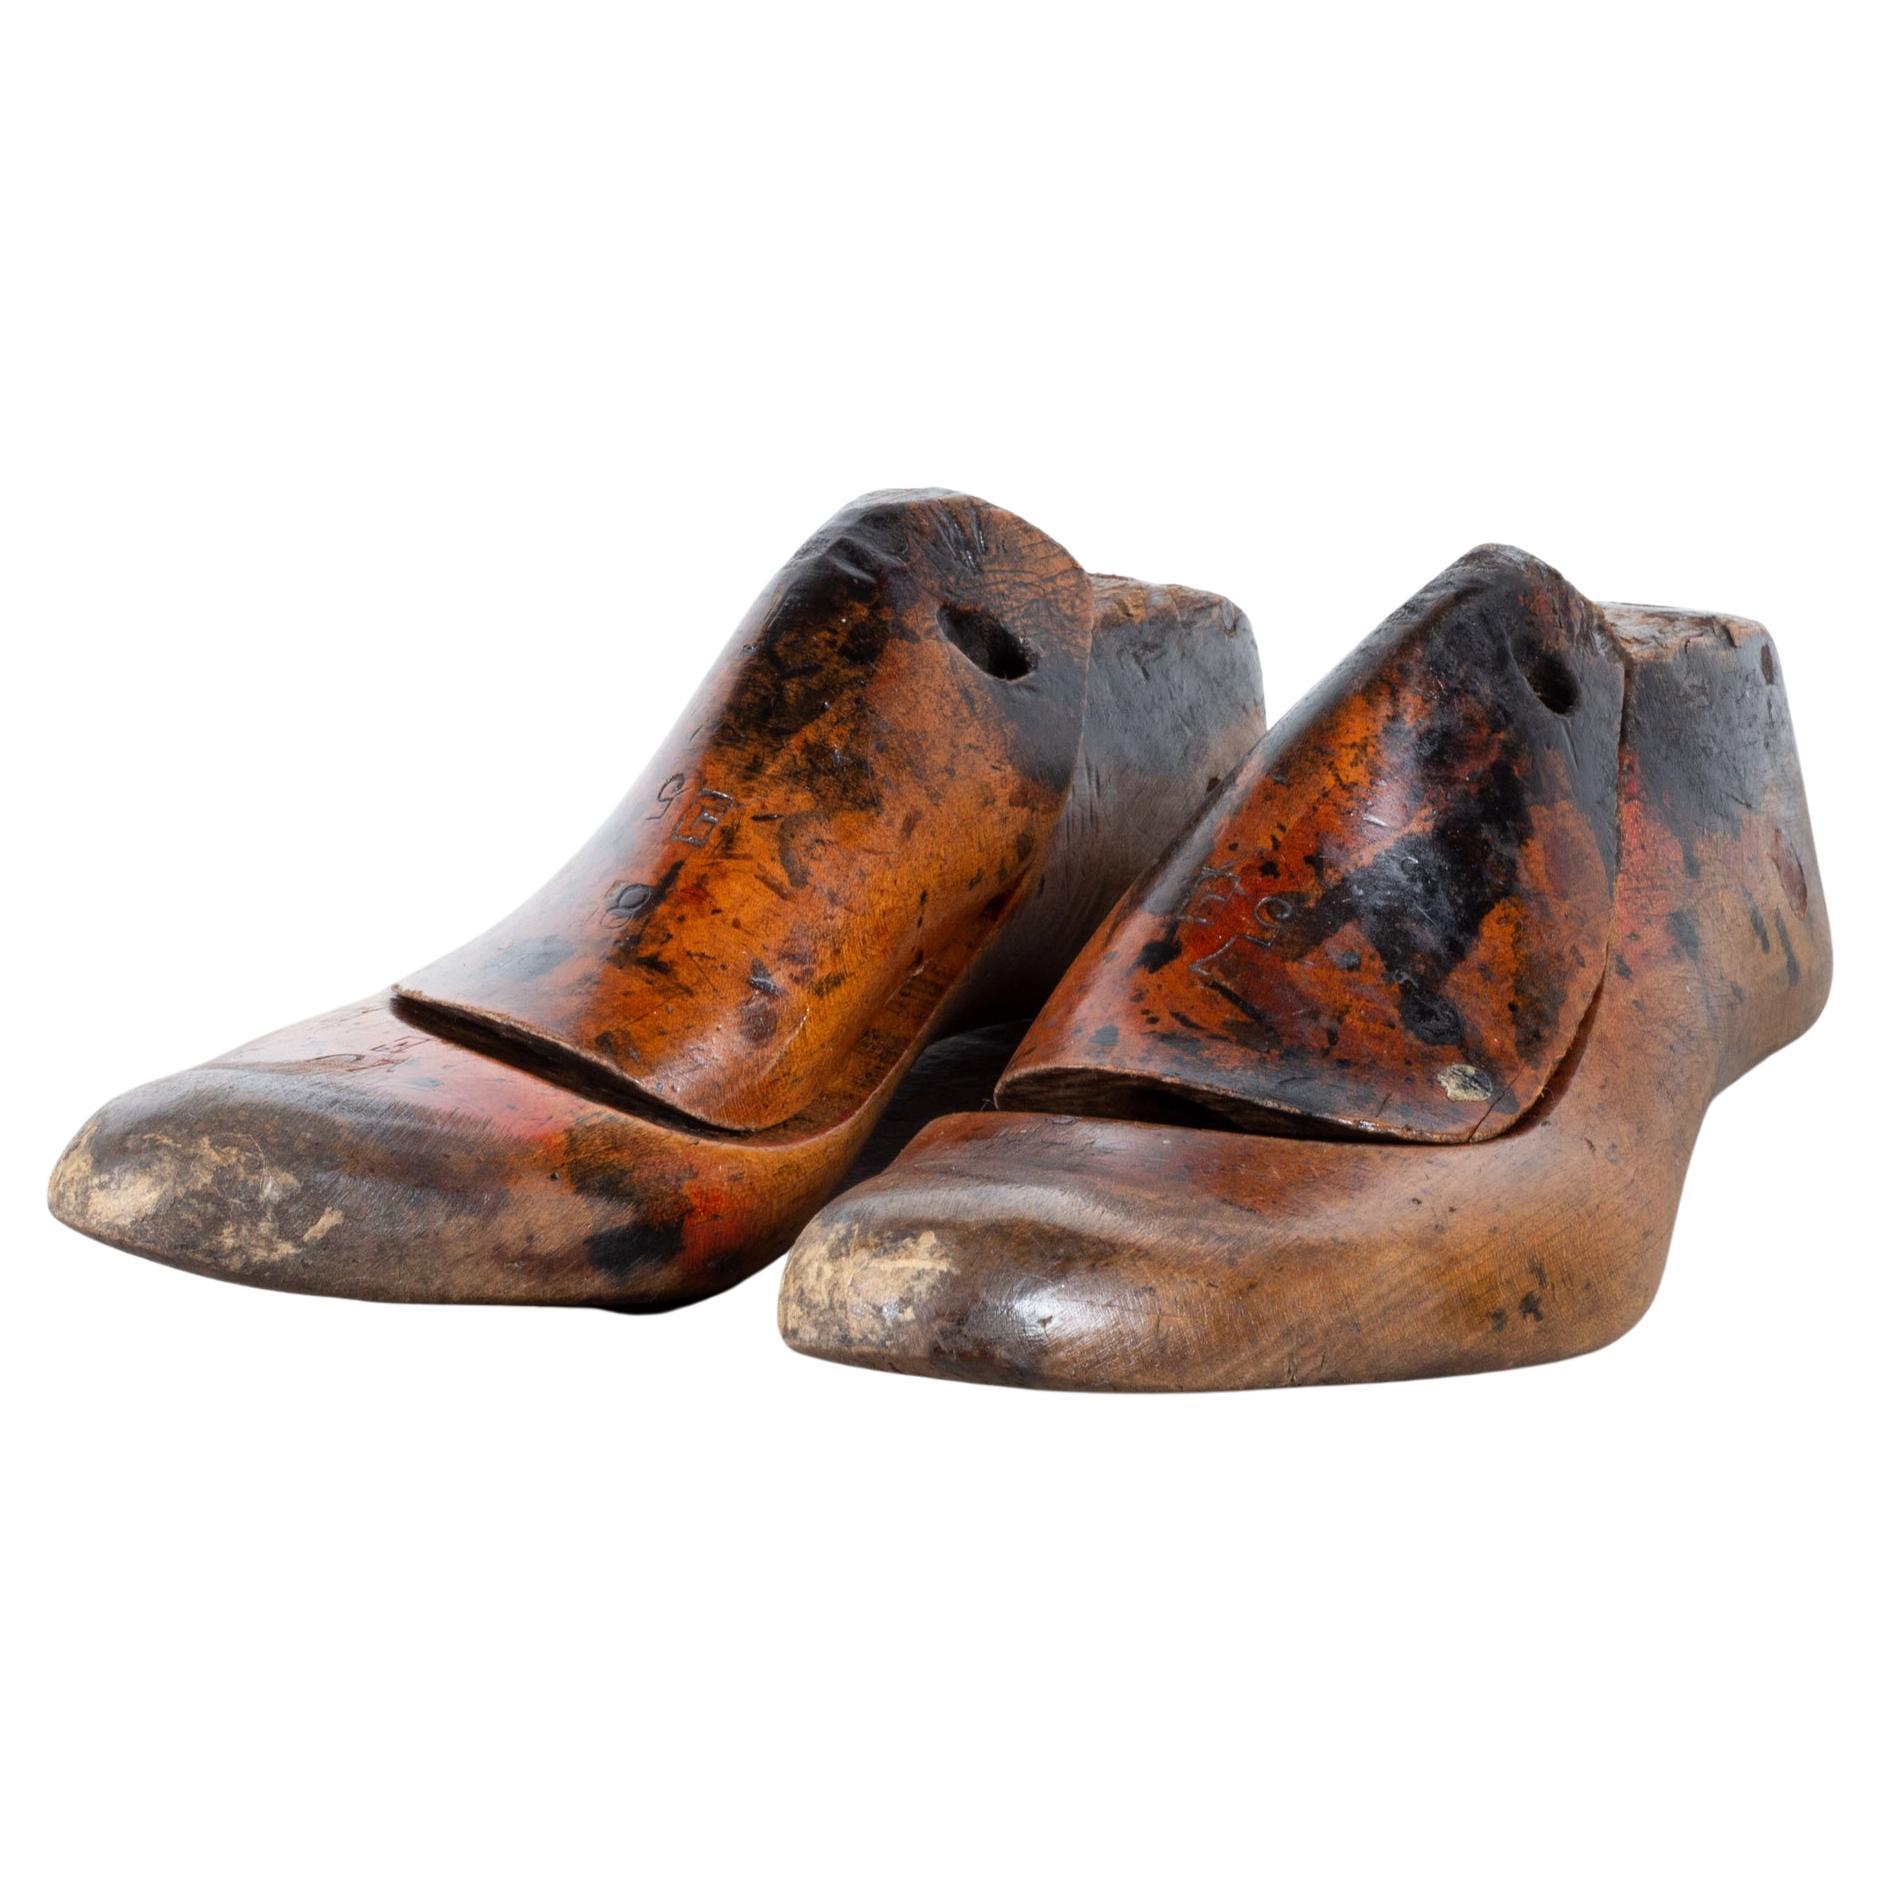 À PROPOS DE

Le prix est indiqué par paire. Uniquement décoratif. Tailles inconnues. Veuillez préciser la paire que vous souhaitez. 

Paires originales de formes de chaussures en bois de cordonnier. Rénové et recouvert d'une couche de peinture.

   